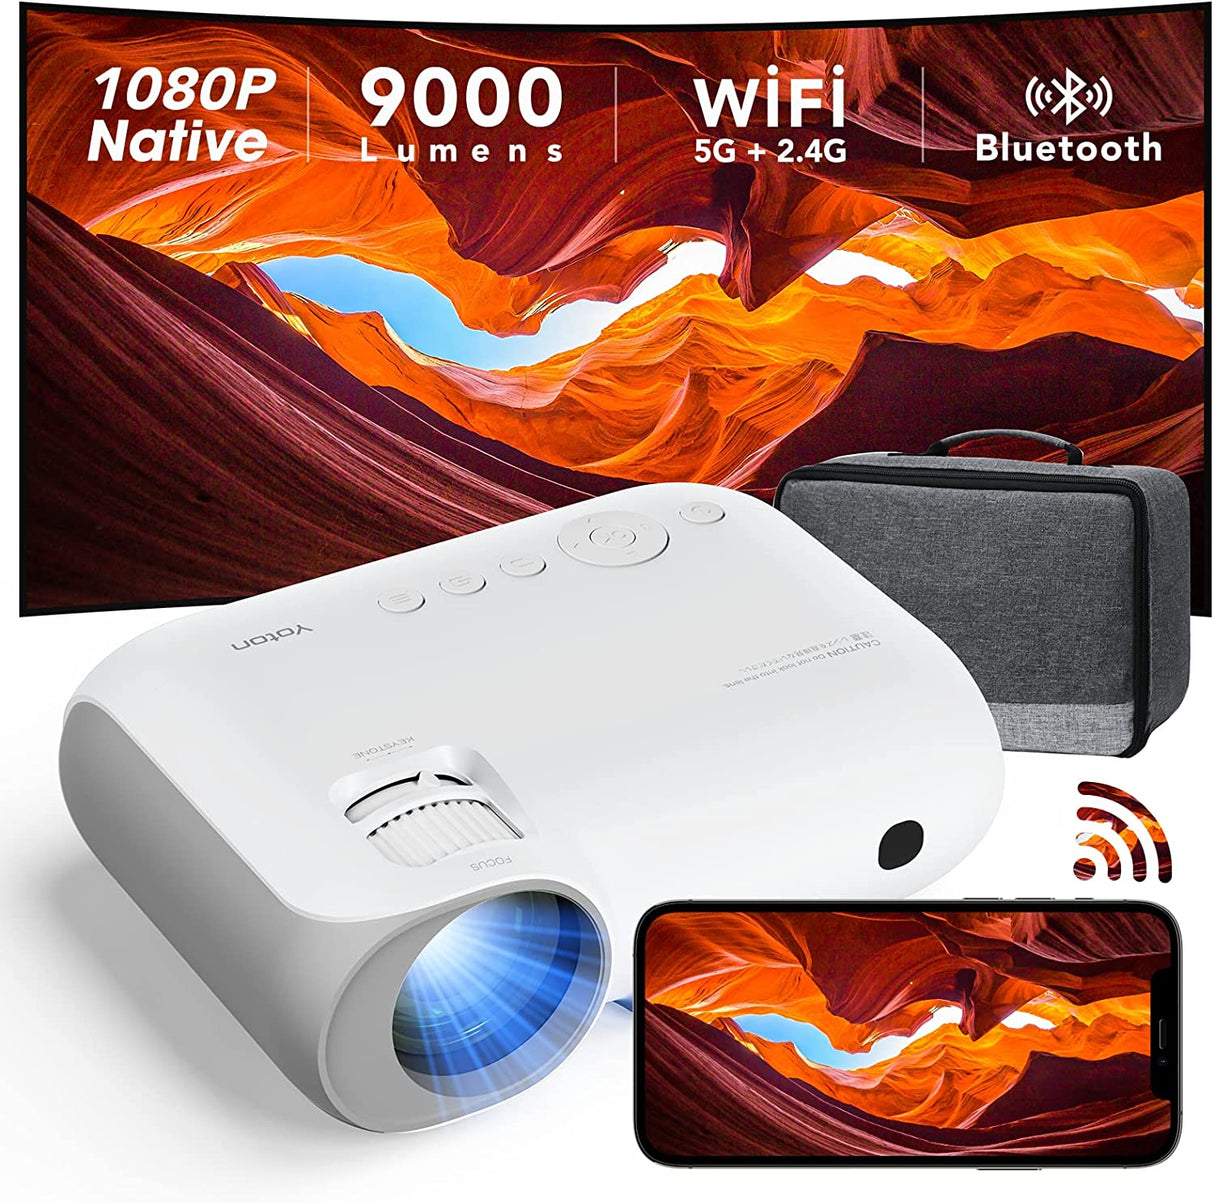 Projetor Wi-Fi 1080p Full HD 9000 Lúmens Contraste 9000:1